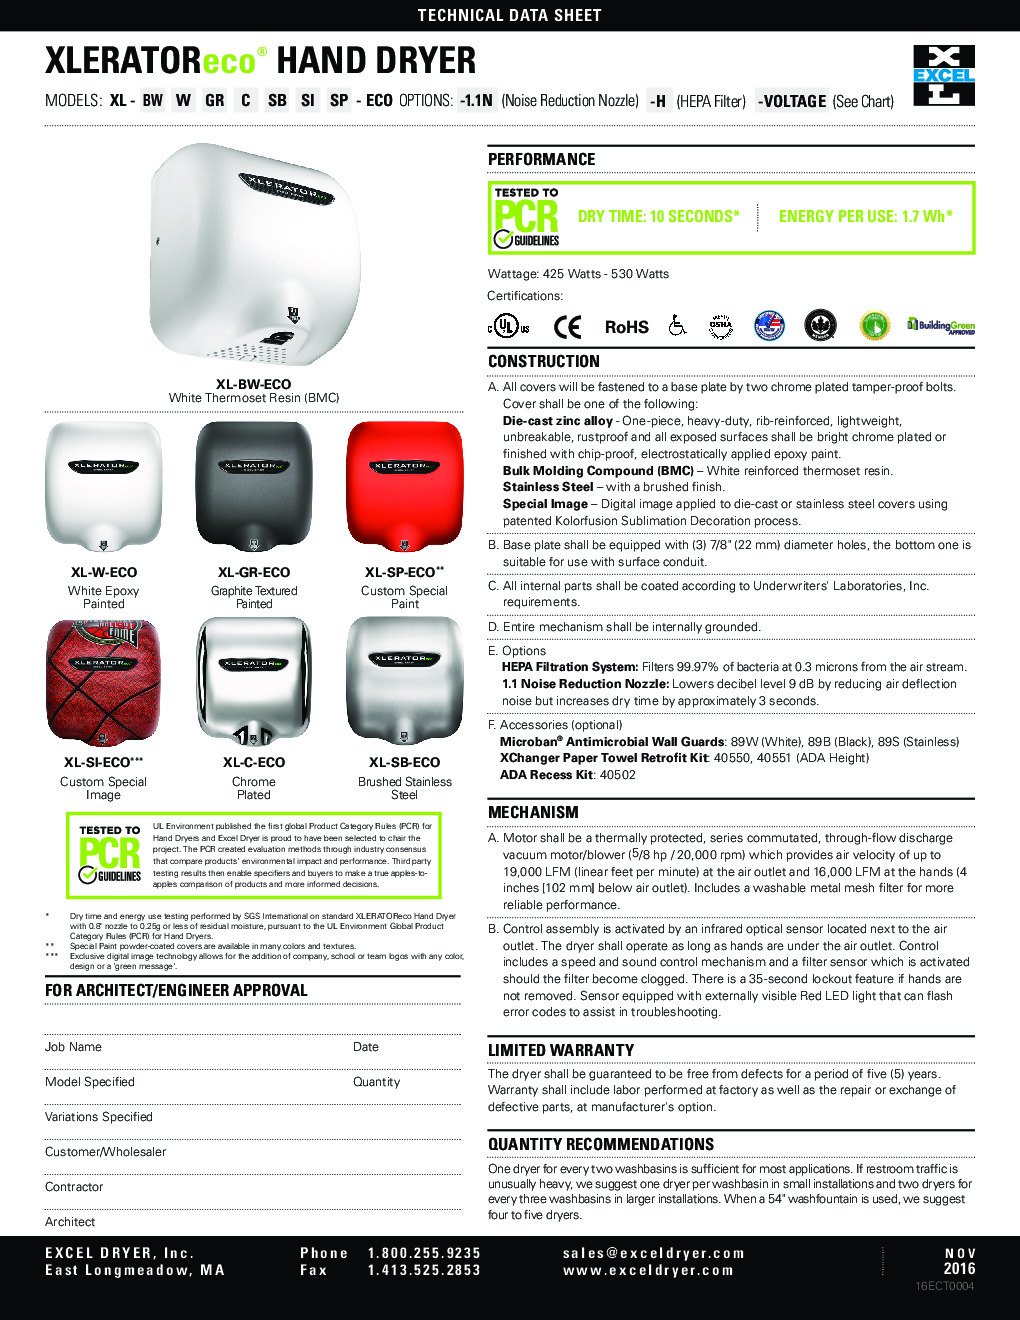 Excel Dryer XL-SP-ECO-B Hand Dryer